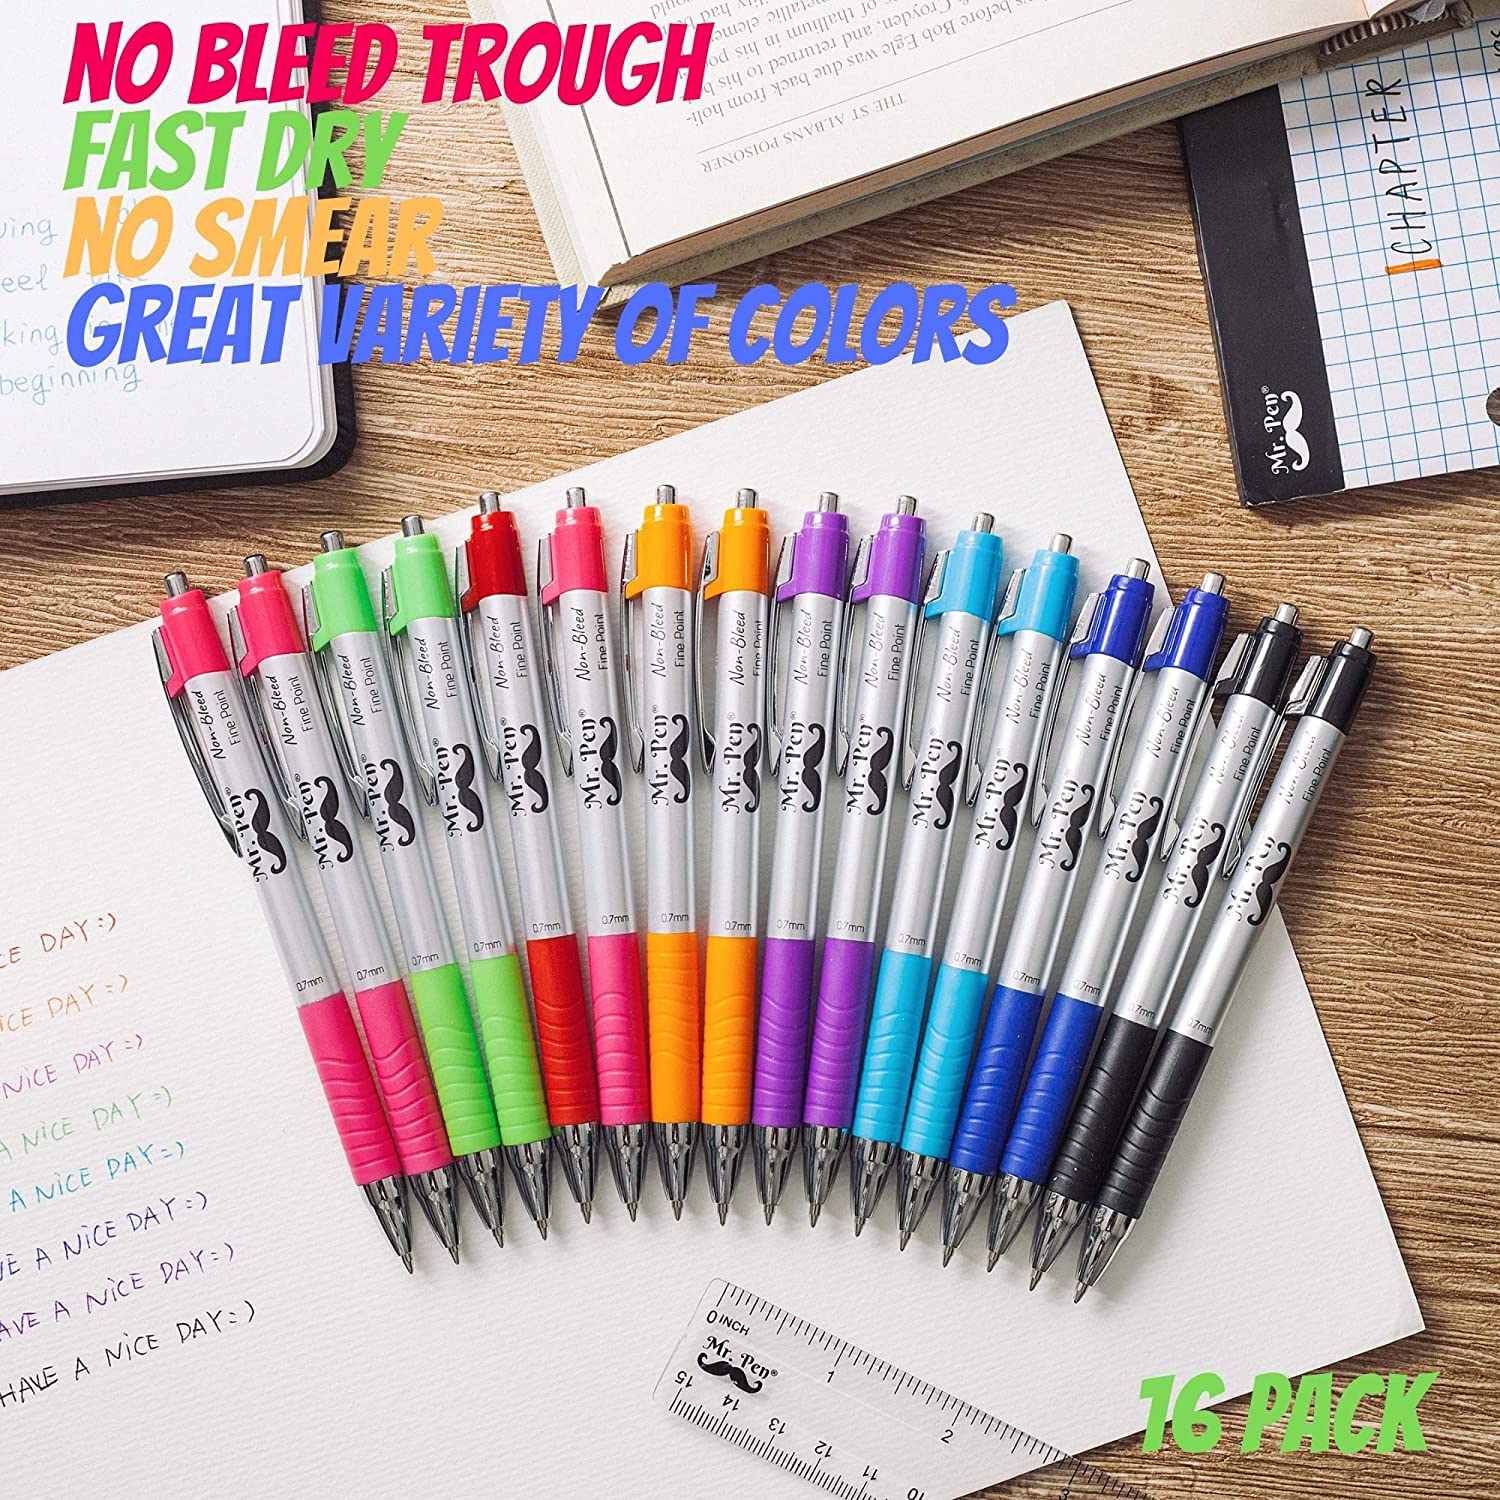 Mr. Pen- Pens, Bible Pens, 16 Pack, Colored Pens, Pens for Journaling,  Bible Pens No Bleed Through, Pens Fine Point, Colorful Pens, Journal Pens,  Fine Tip, Ink Pens, Planner Pens, Color Pens 